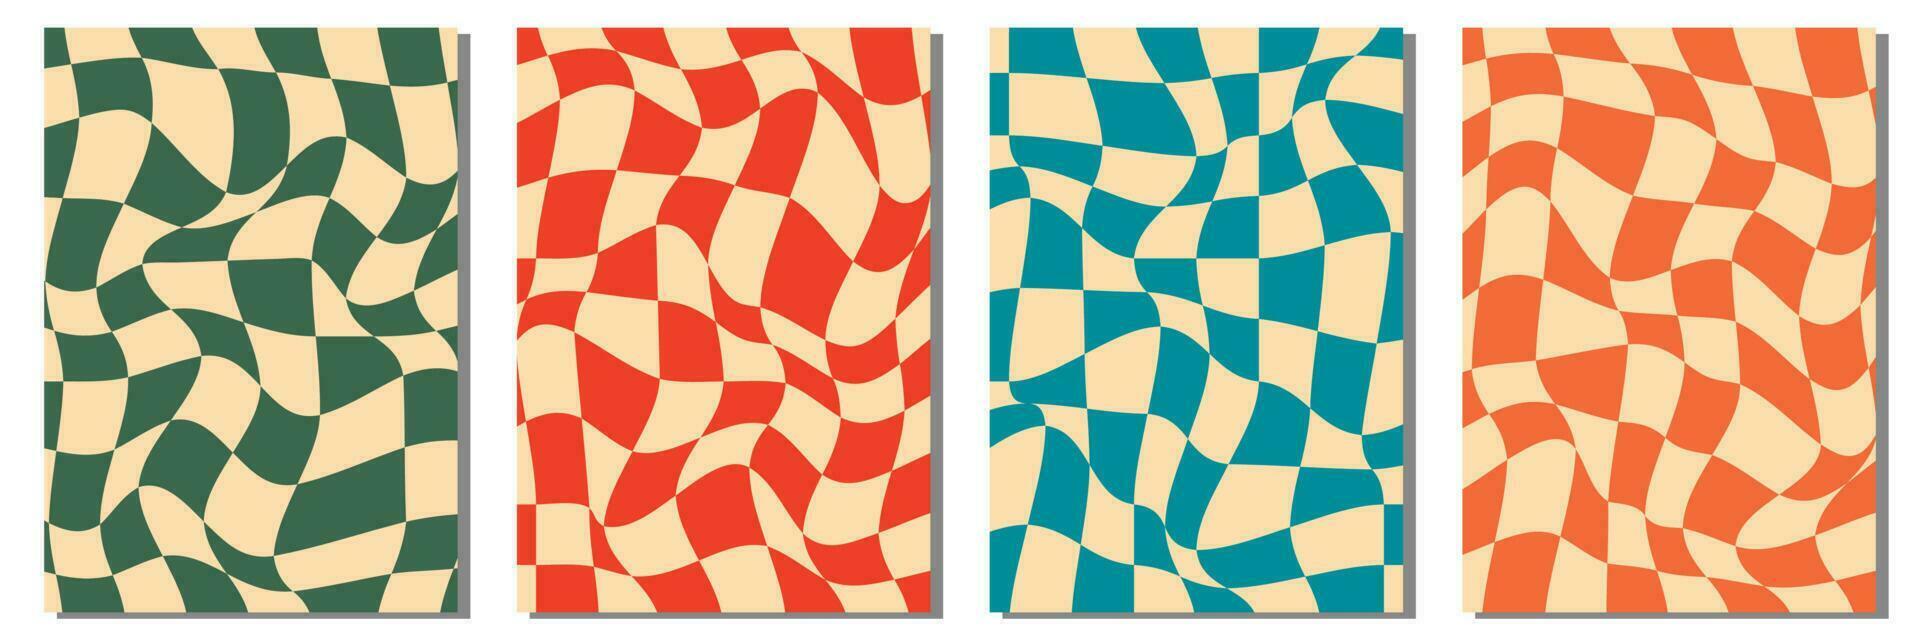 schaakbord retro Jaren 60 jaren 70 90s structuur vector abstract meetkundig plein achtergrond blauw, rood en groen of geel behang wijnoogst illustratie set.